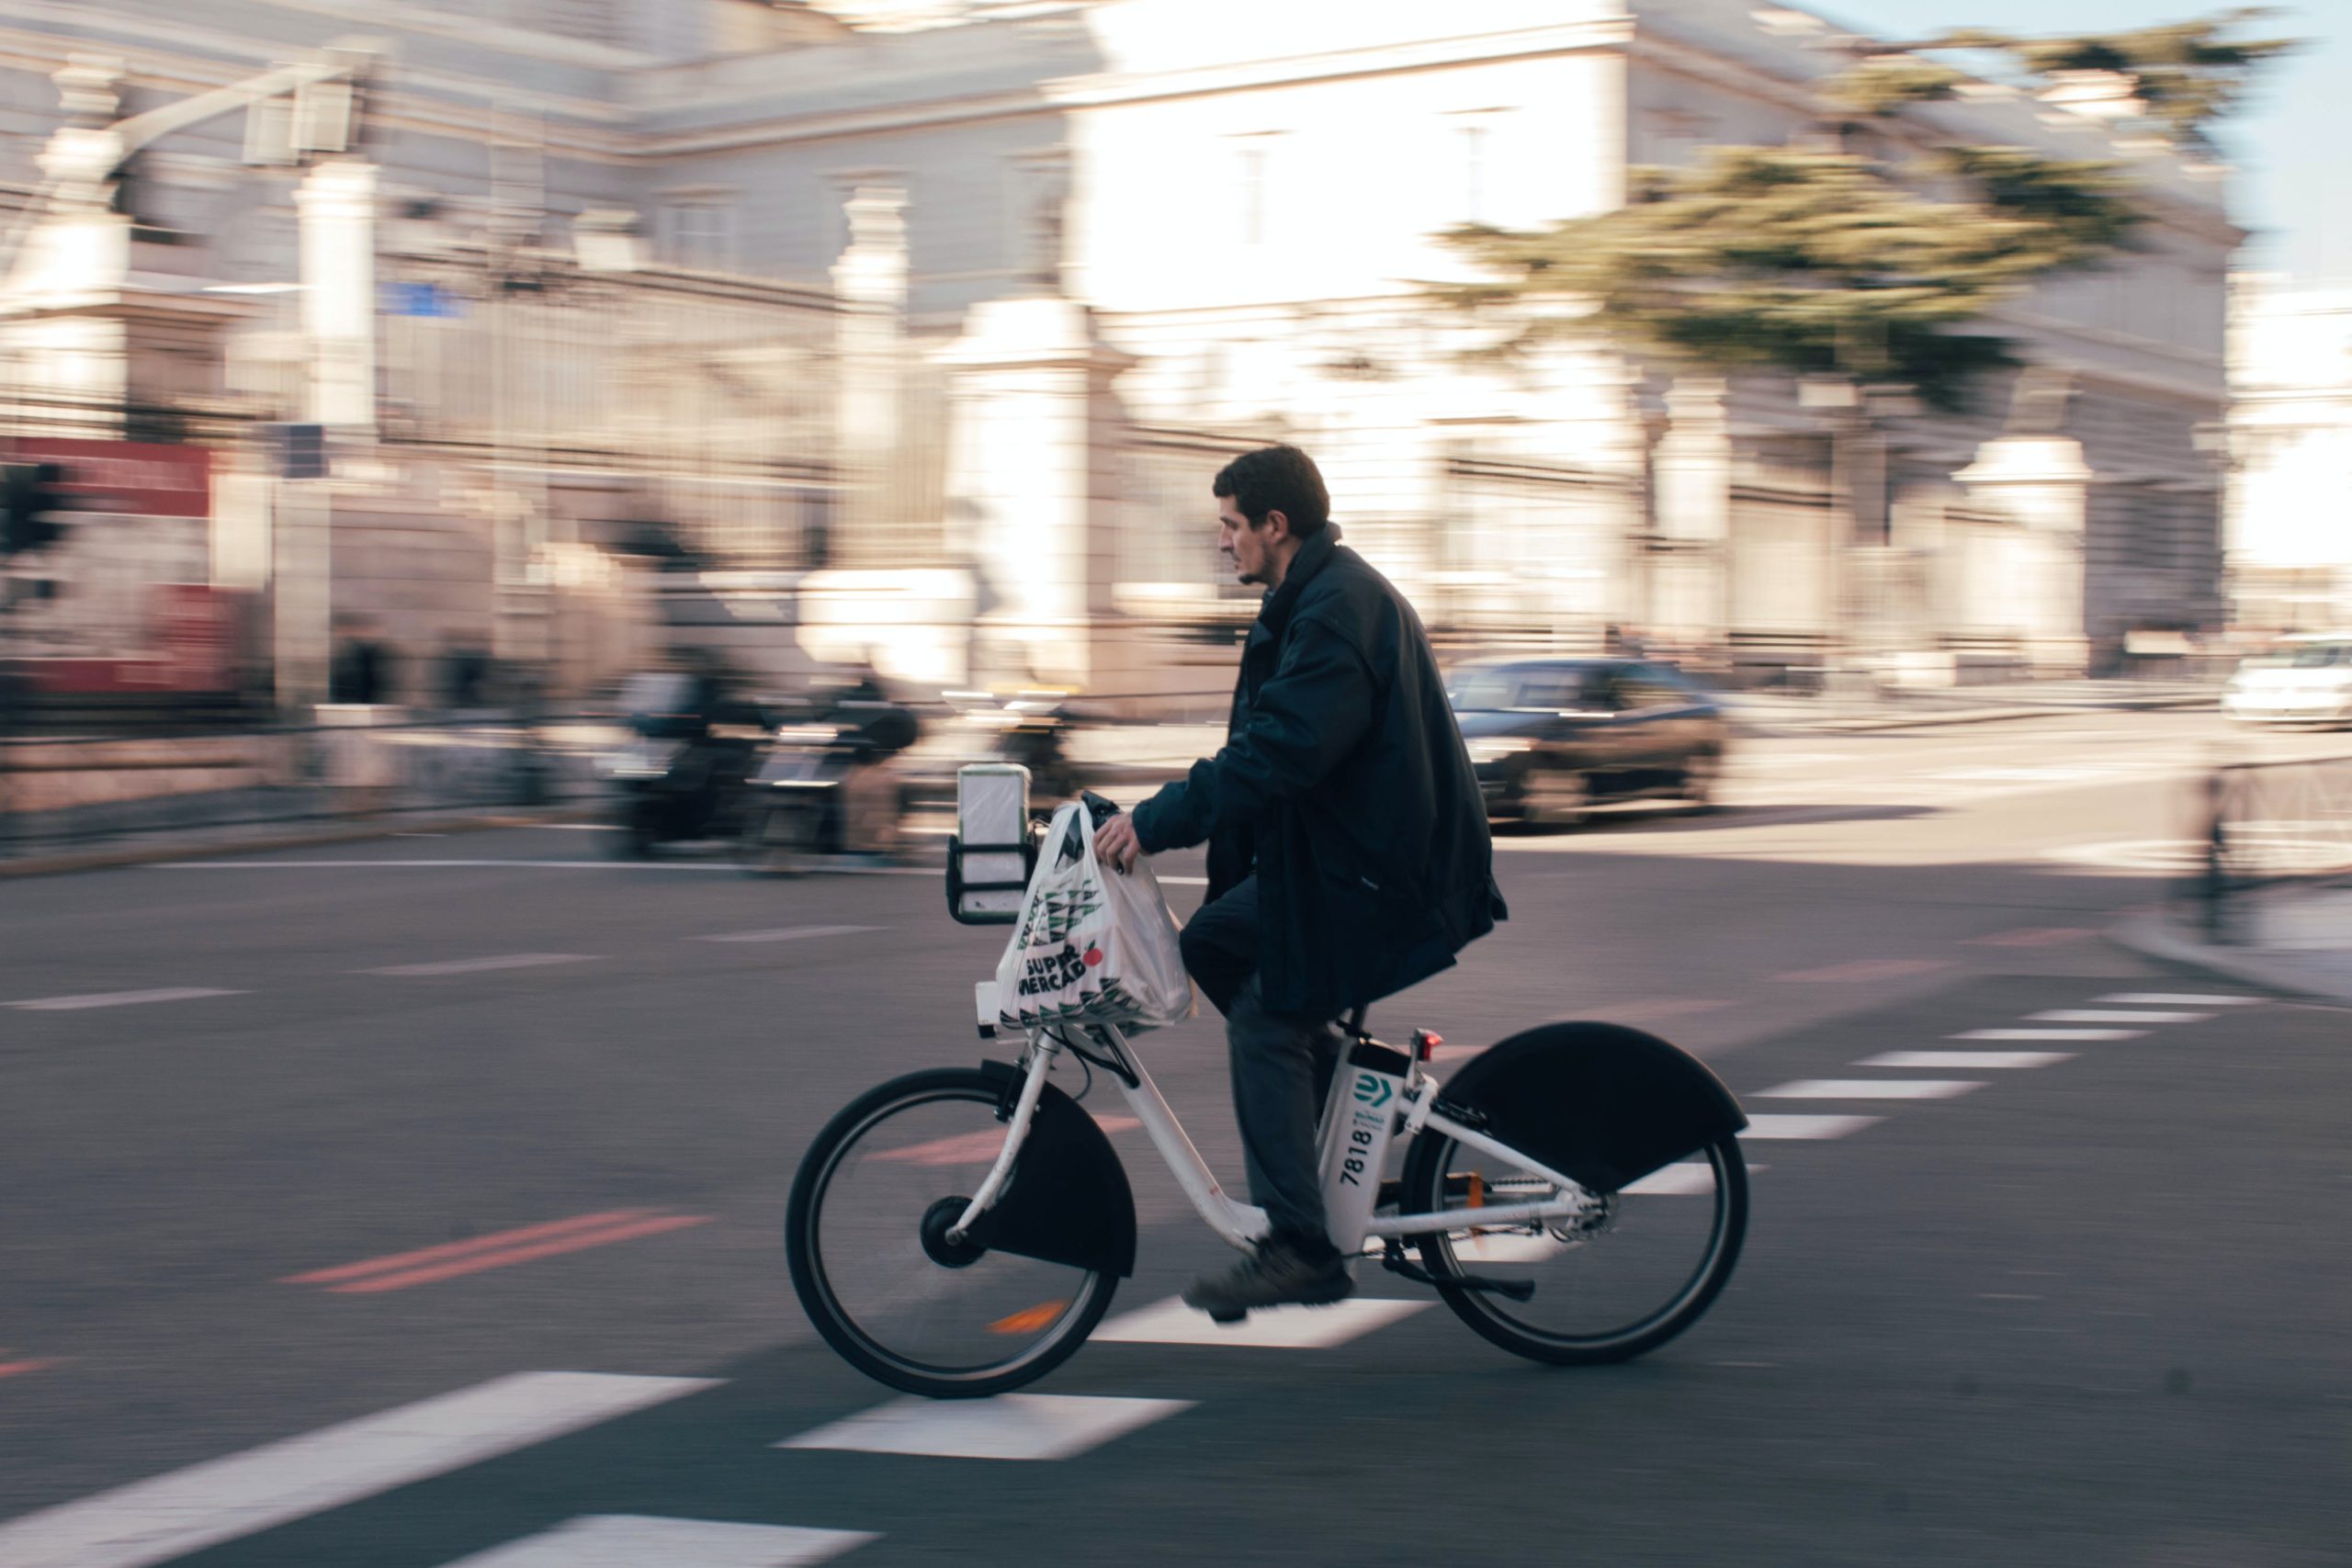 El uso de la bicicleta compartida en España: ¿Somos sostenibles?Fuente: Yuri Félix /Prexel